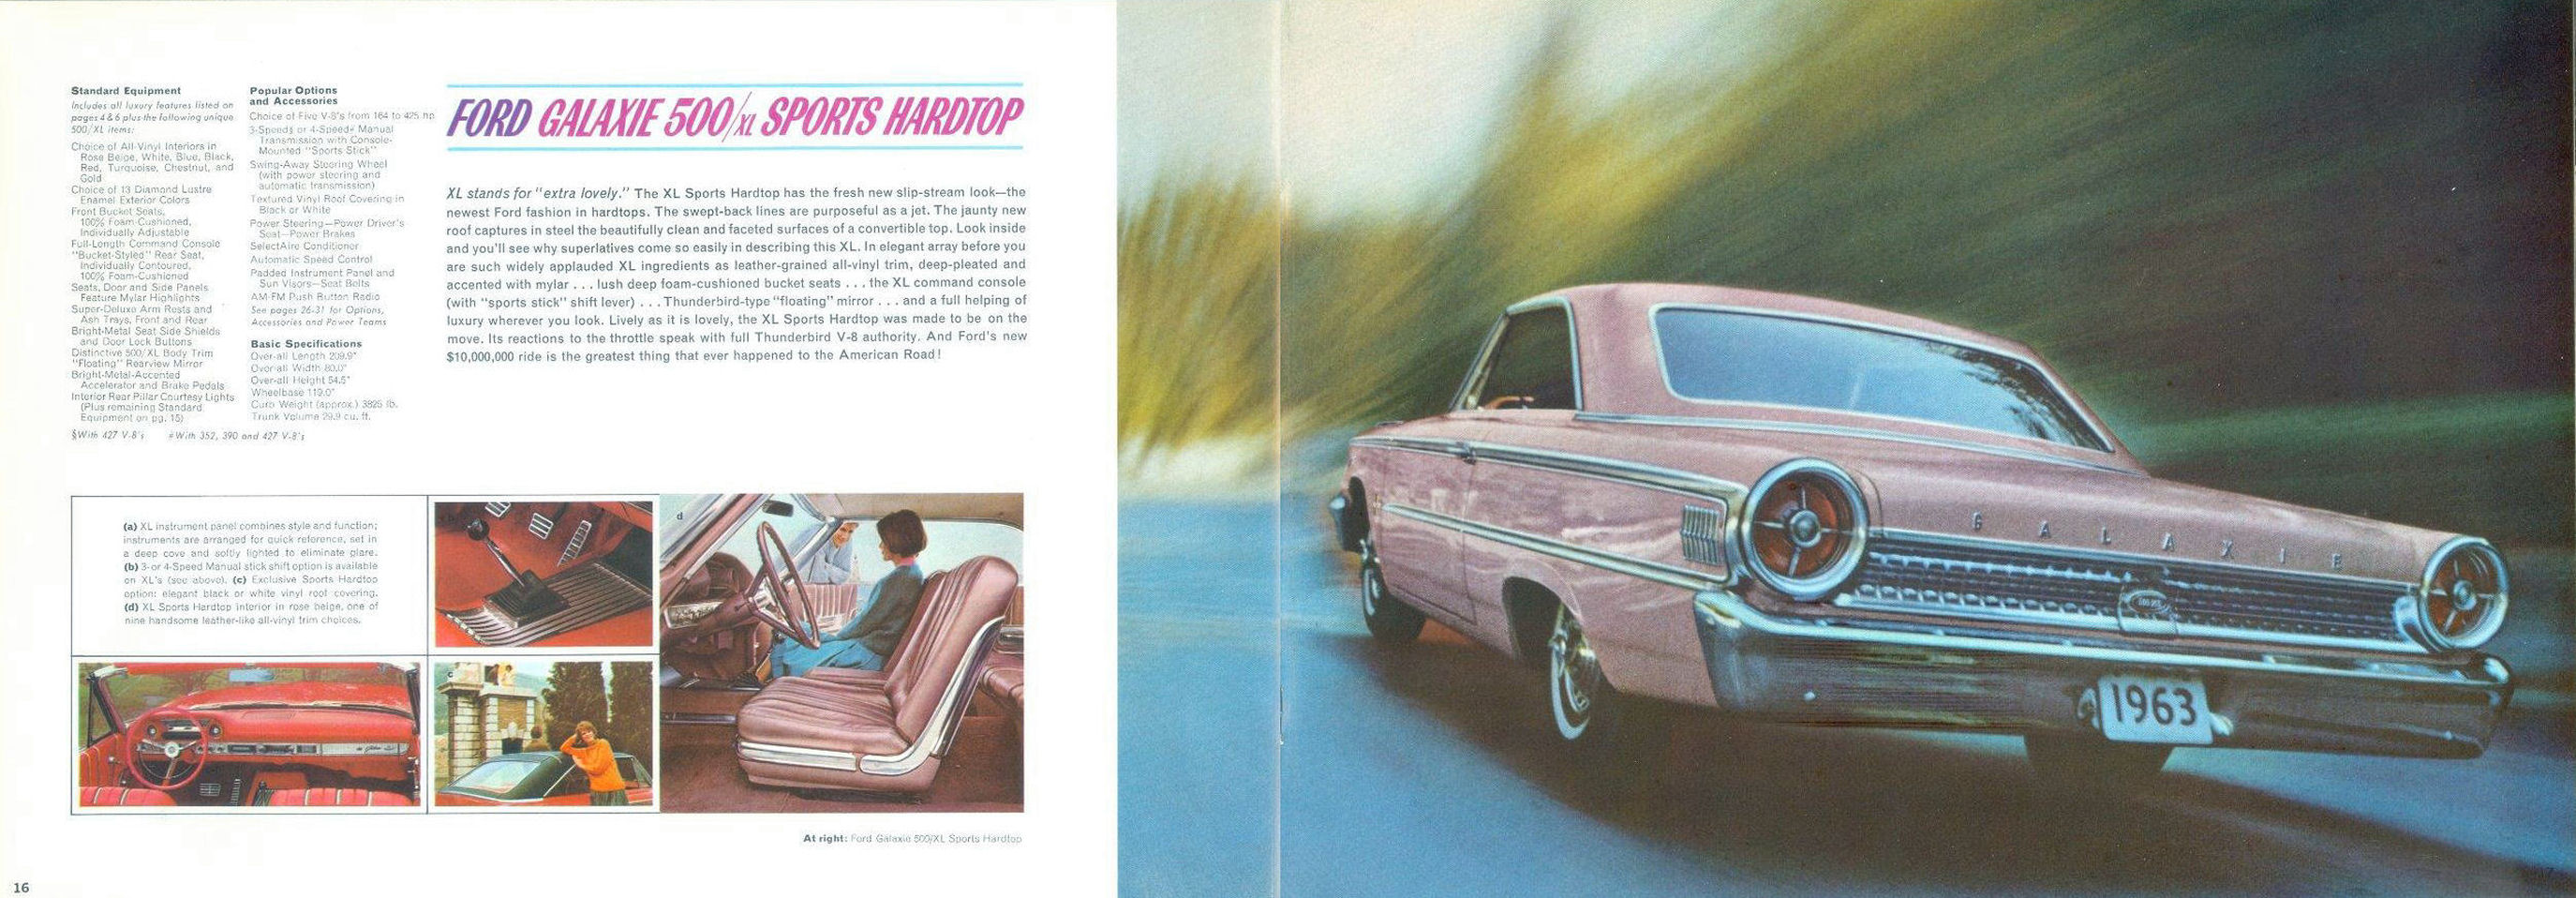 1963_Ford_Full_Size_Rev-16-17